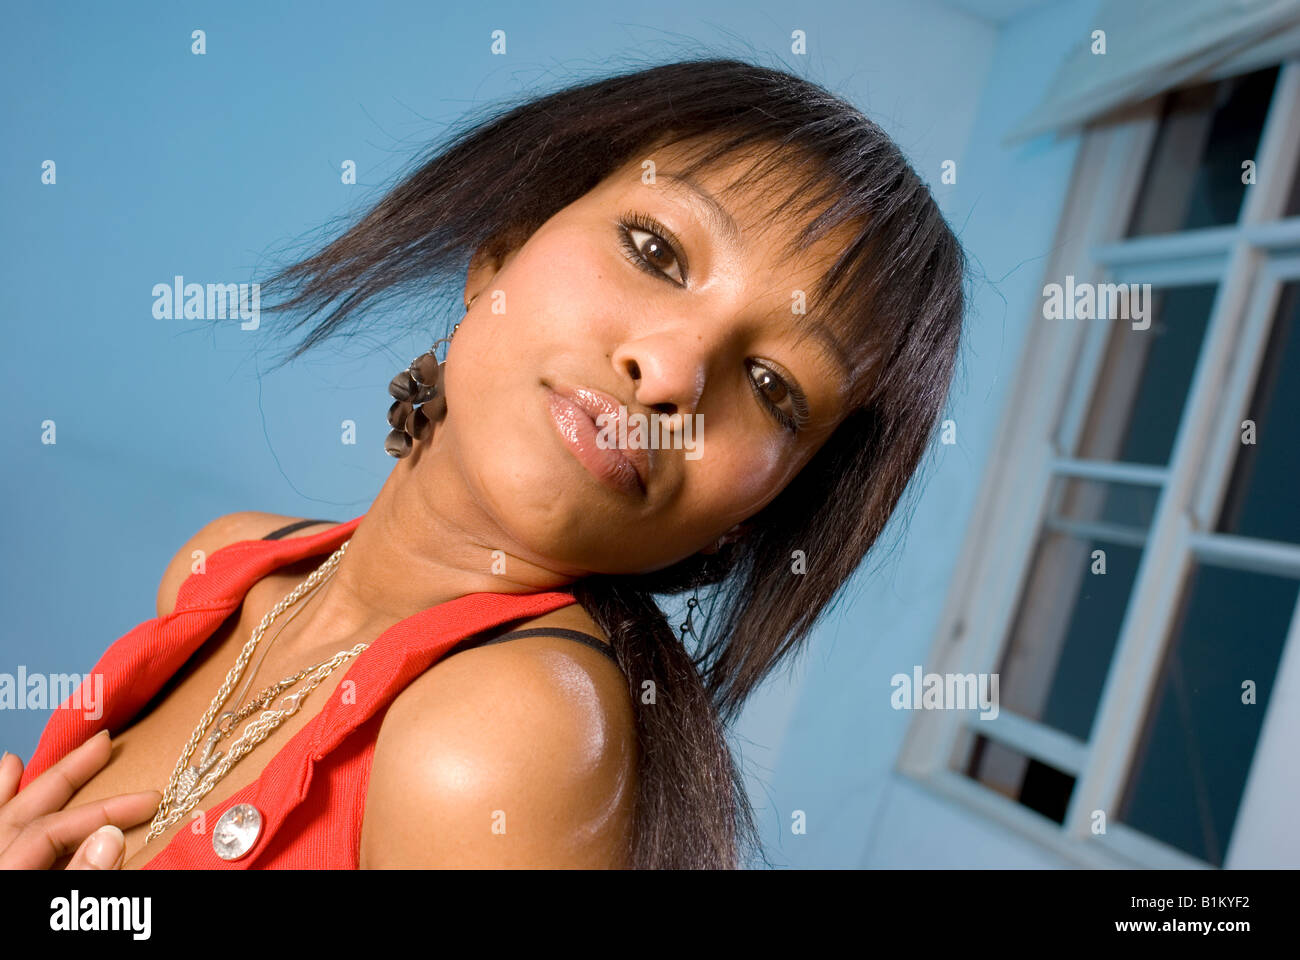 Chica negra africana en el divertido modo retrato Foto de stock